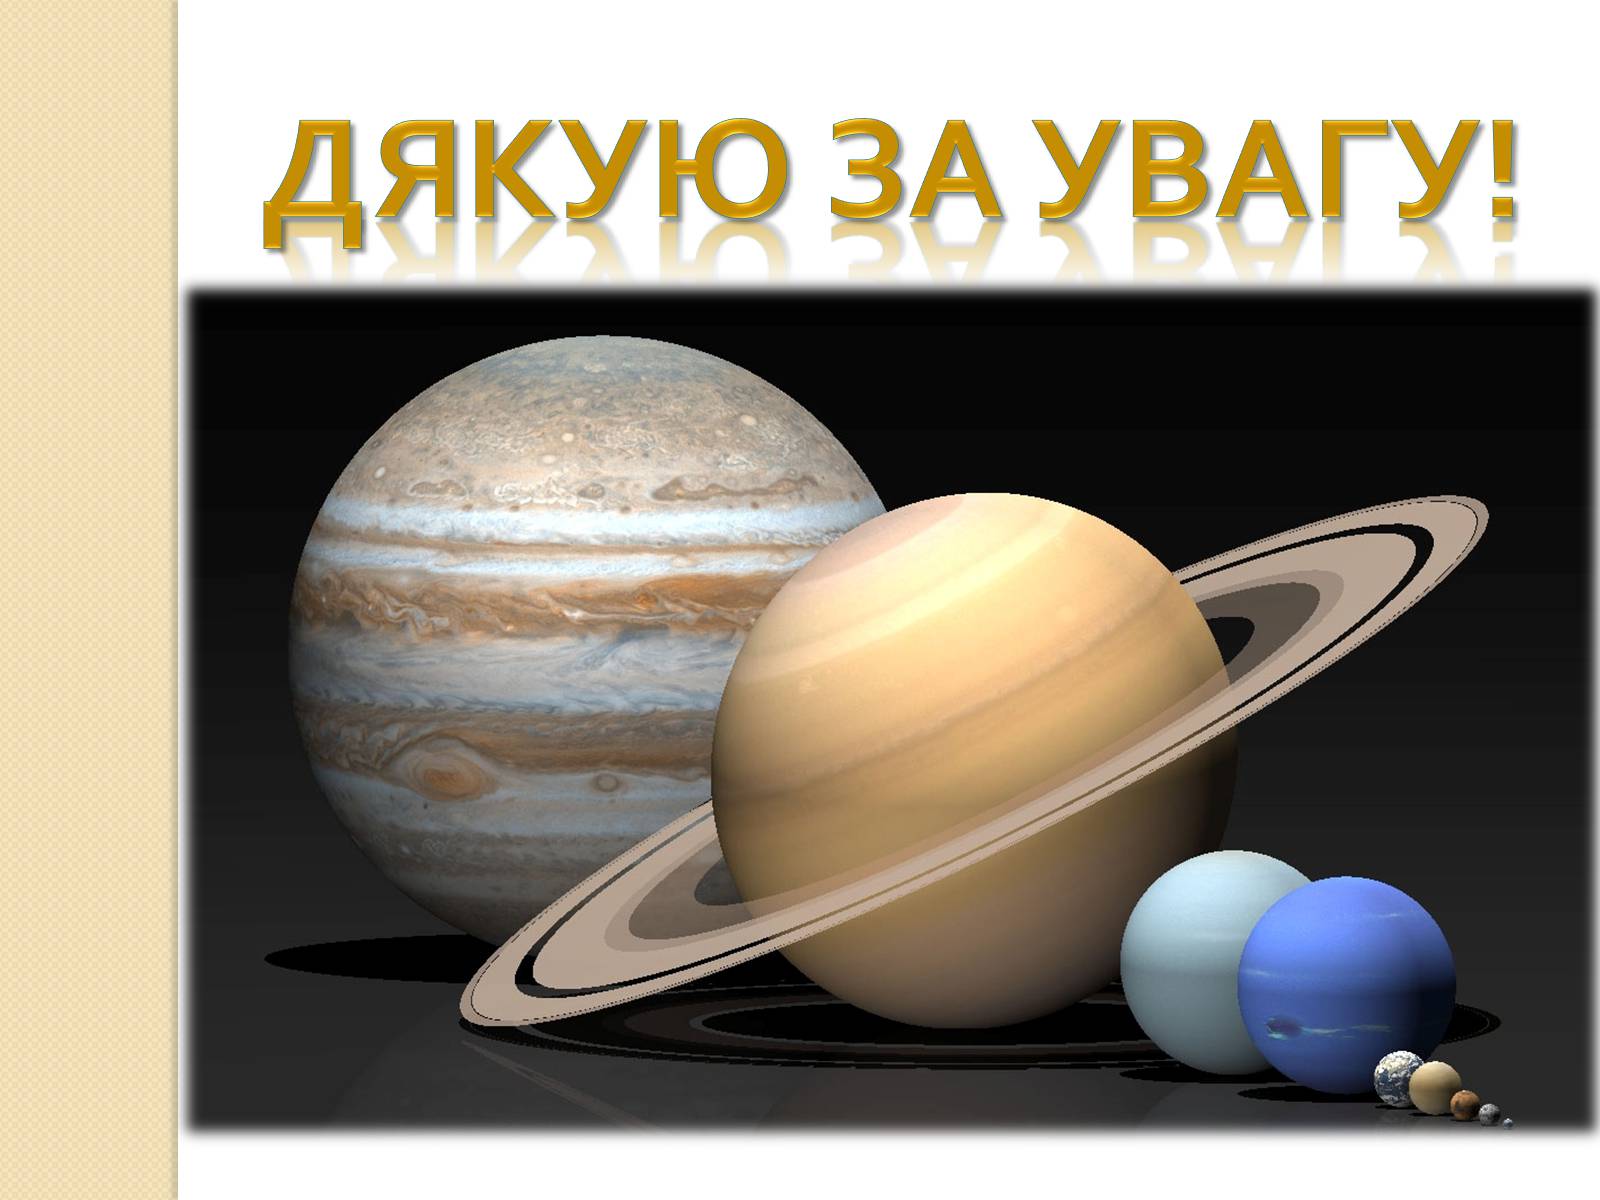 Самая большая система солнечной системы сатурн. Планета Сатурн и Уран. Планеты Юпитер и Сатурн. Сатурн в солнечной системе. Солнечная система Юпитер и Сатурн.